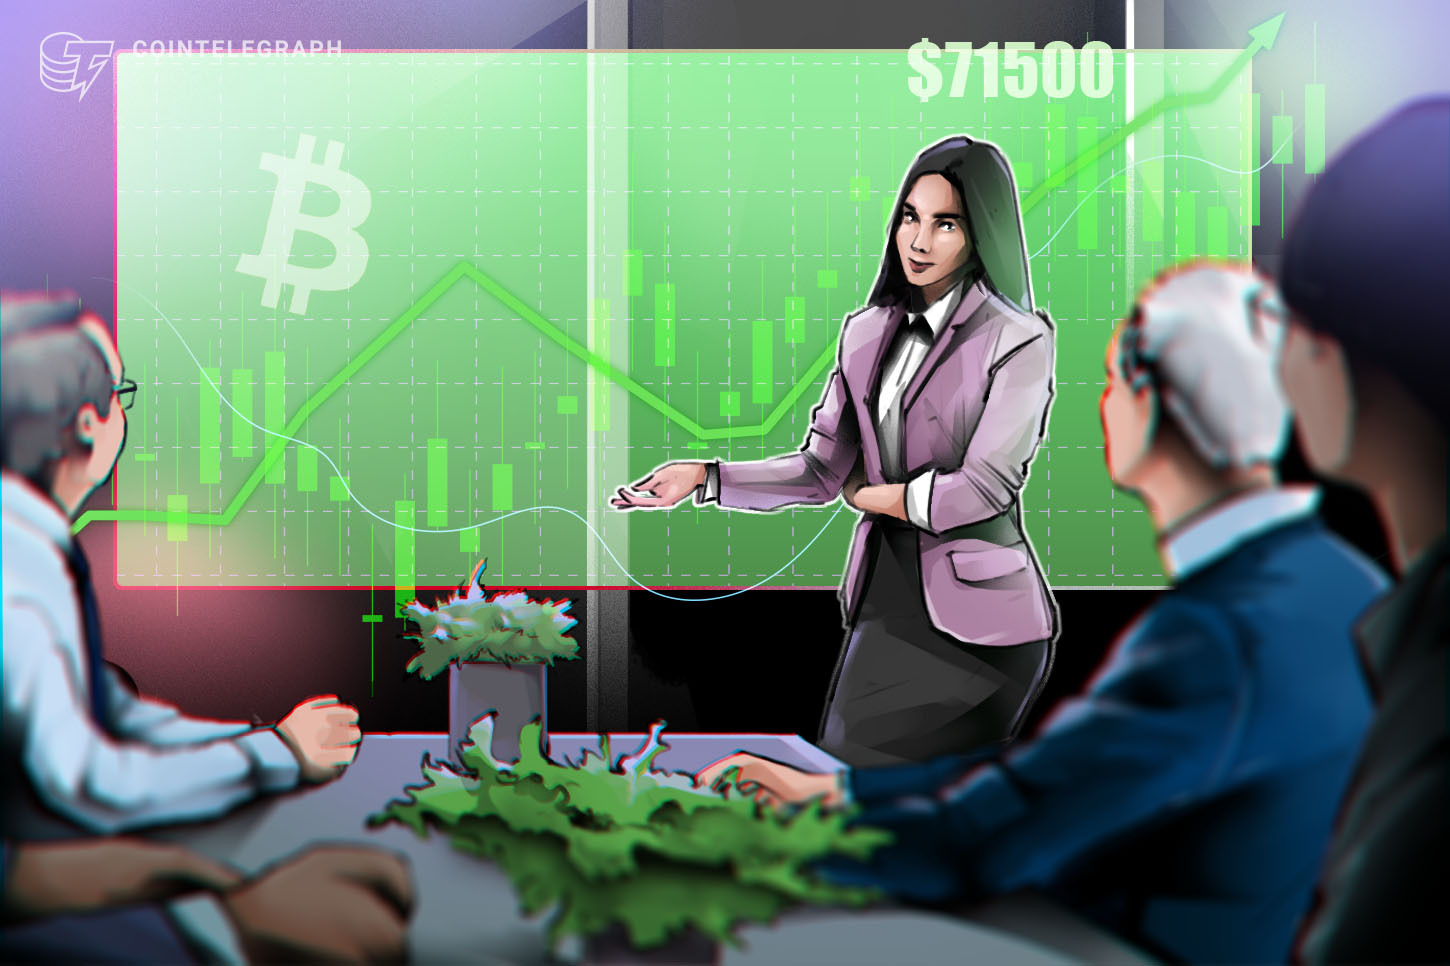 Nhà giao dịch hướng đến giá Bitcoin $ 71.5K khi lợi nhuận mở của nông dân tăng 13% 